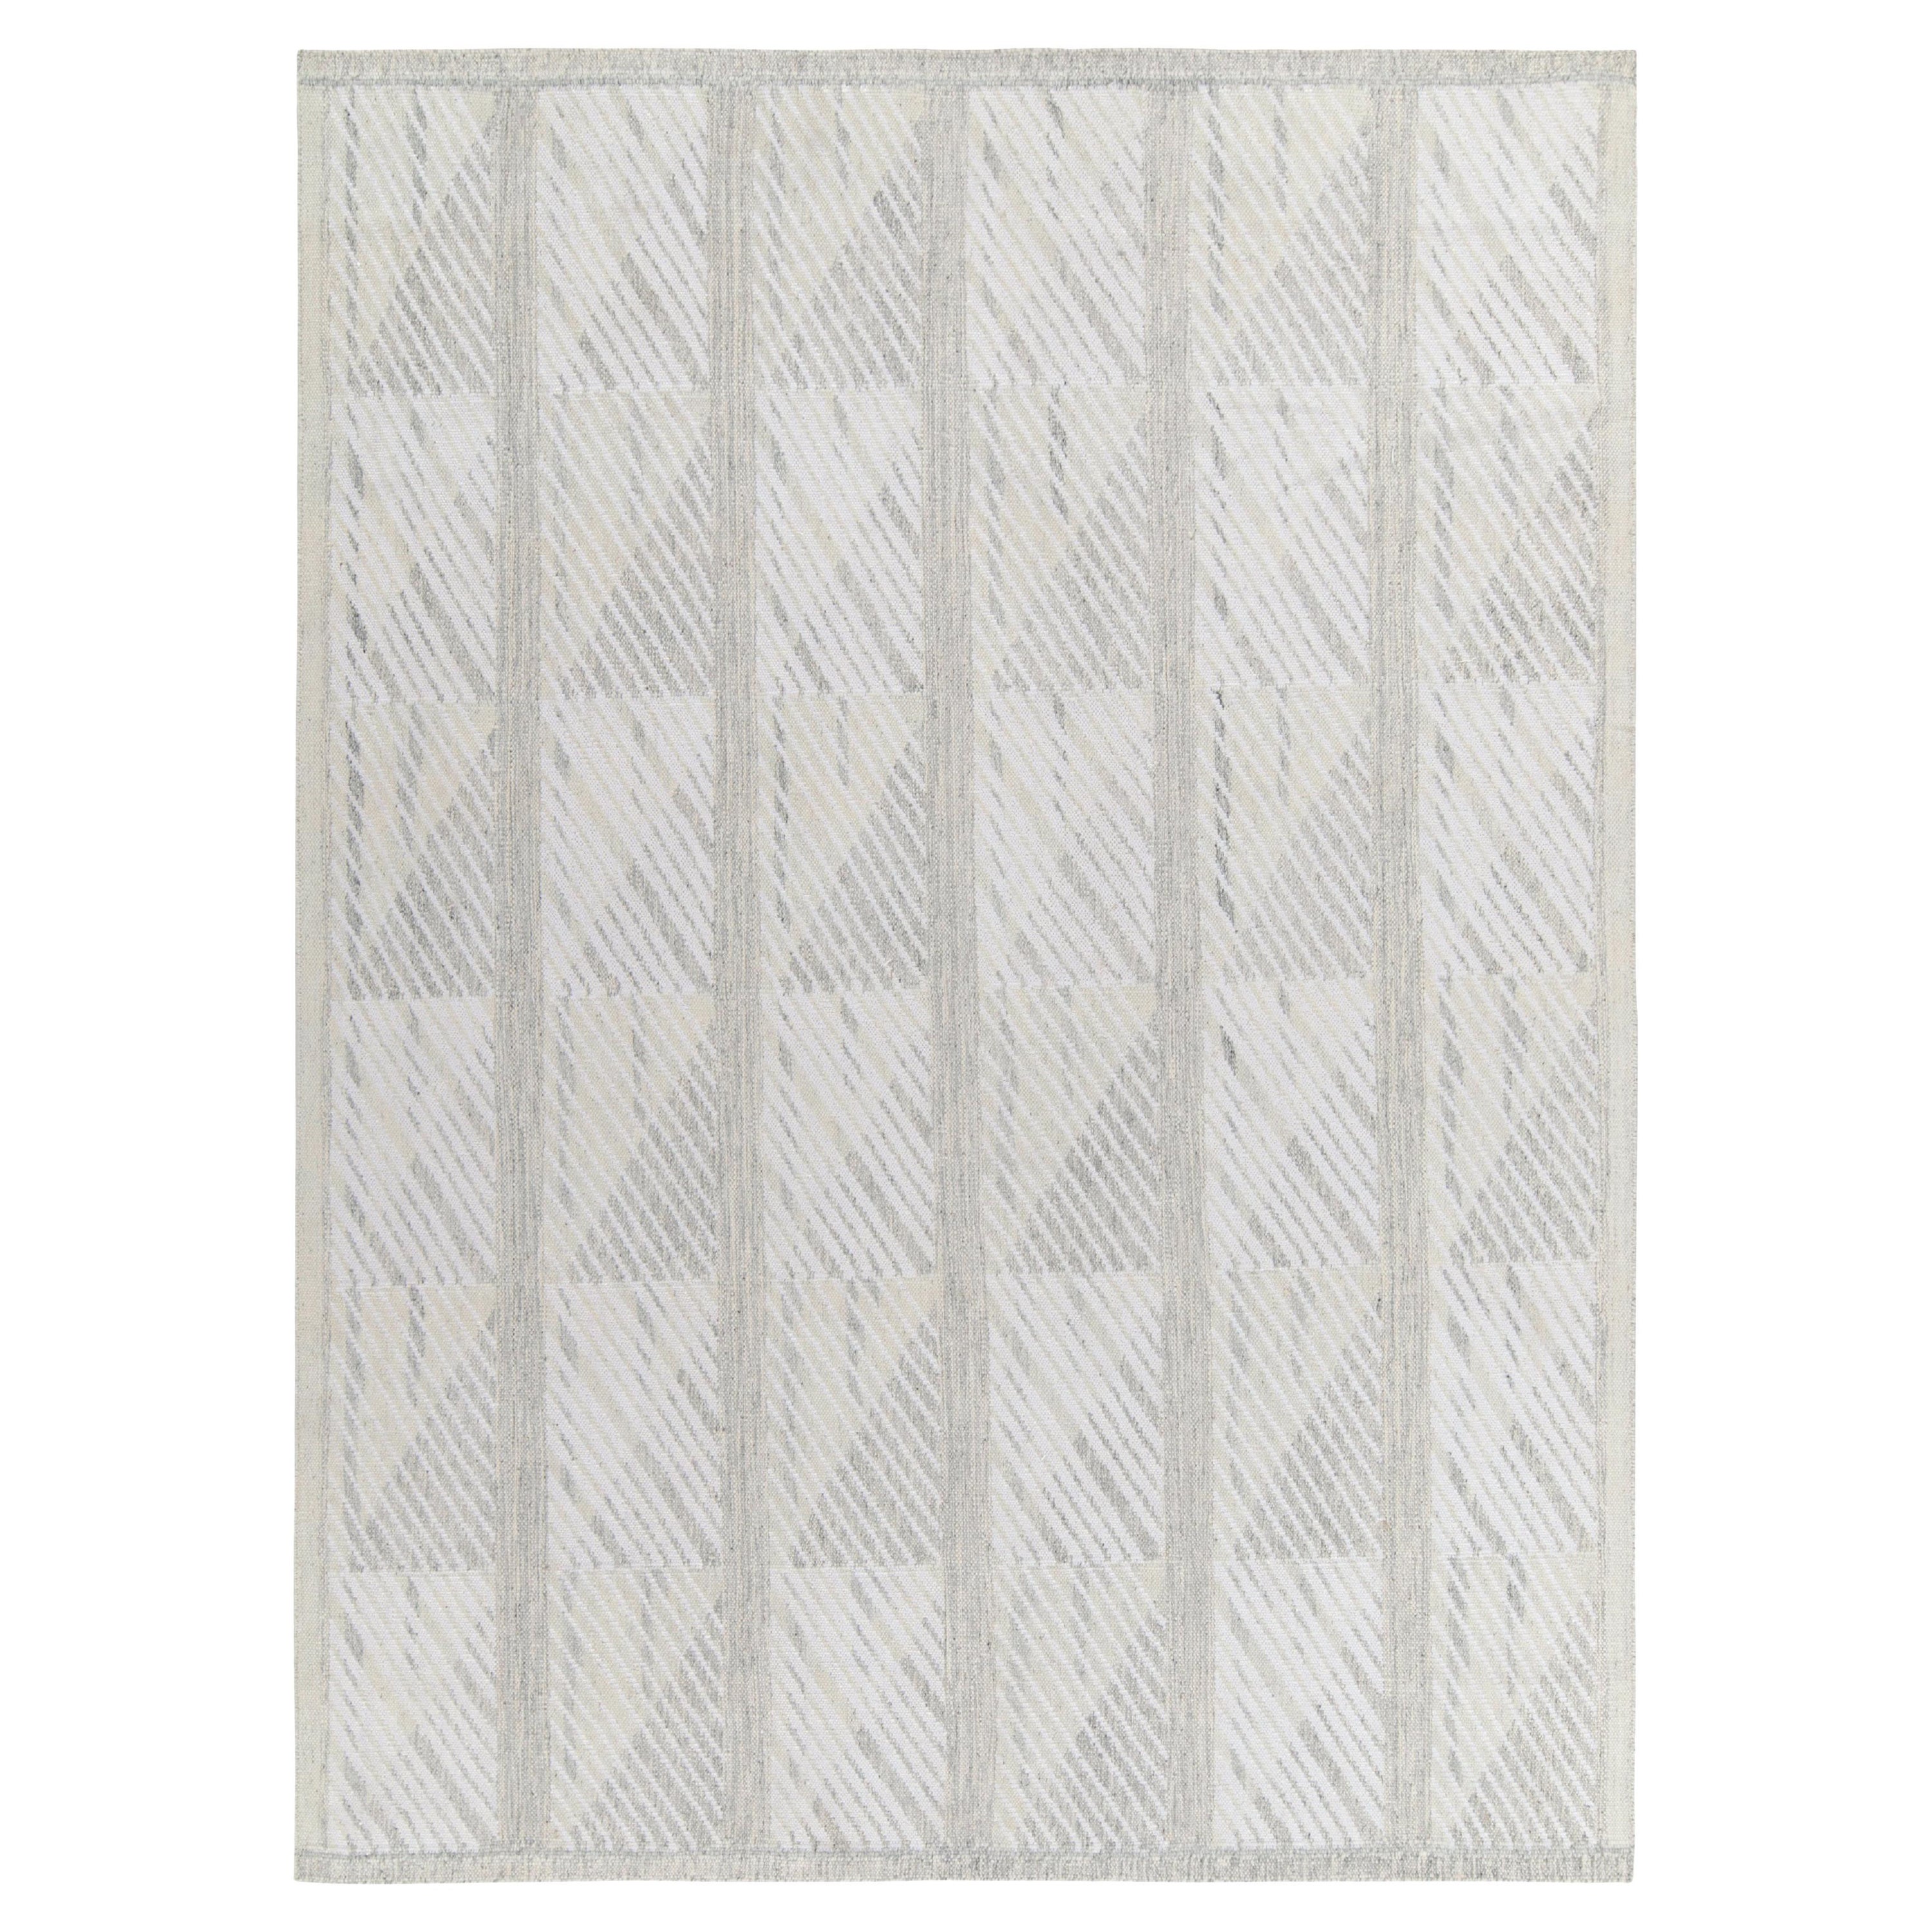 Rug & Kilim's skandinavischer Kilim-Teppich in Grau, weißes geometrisches Muster